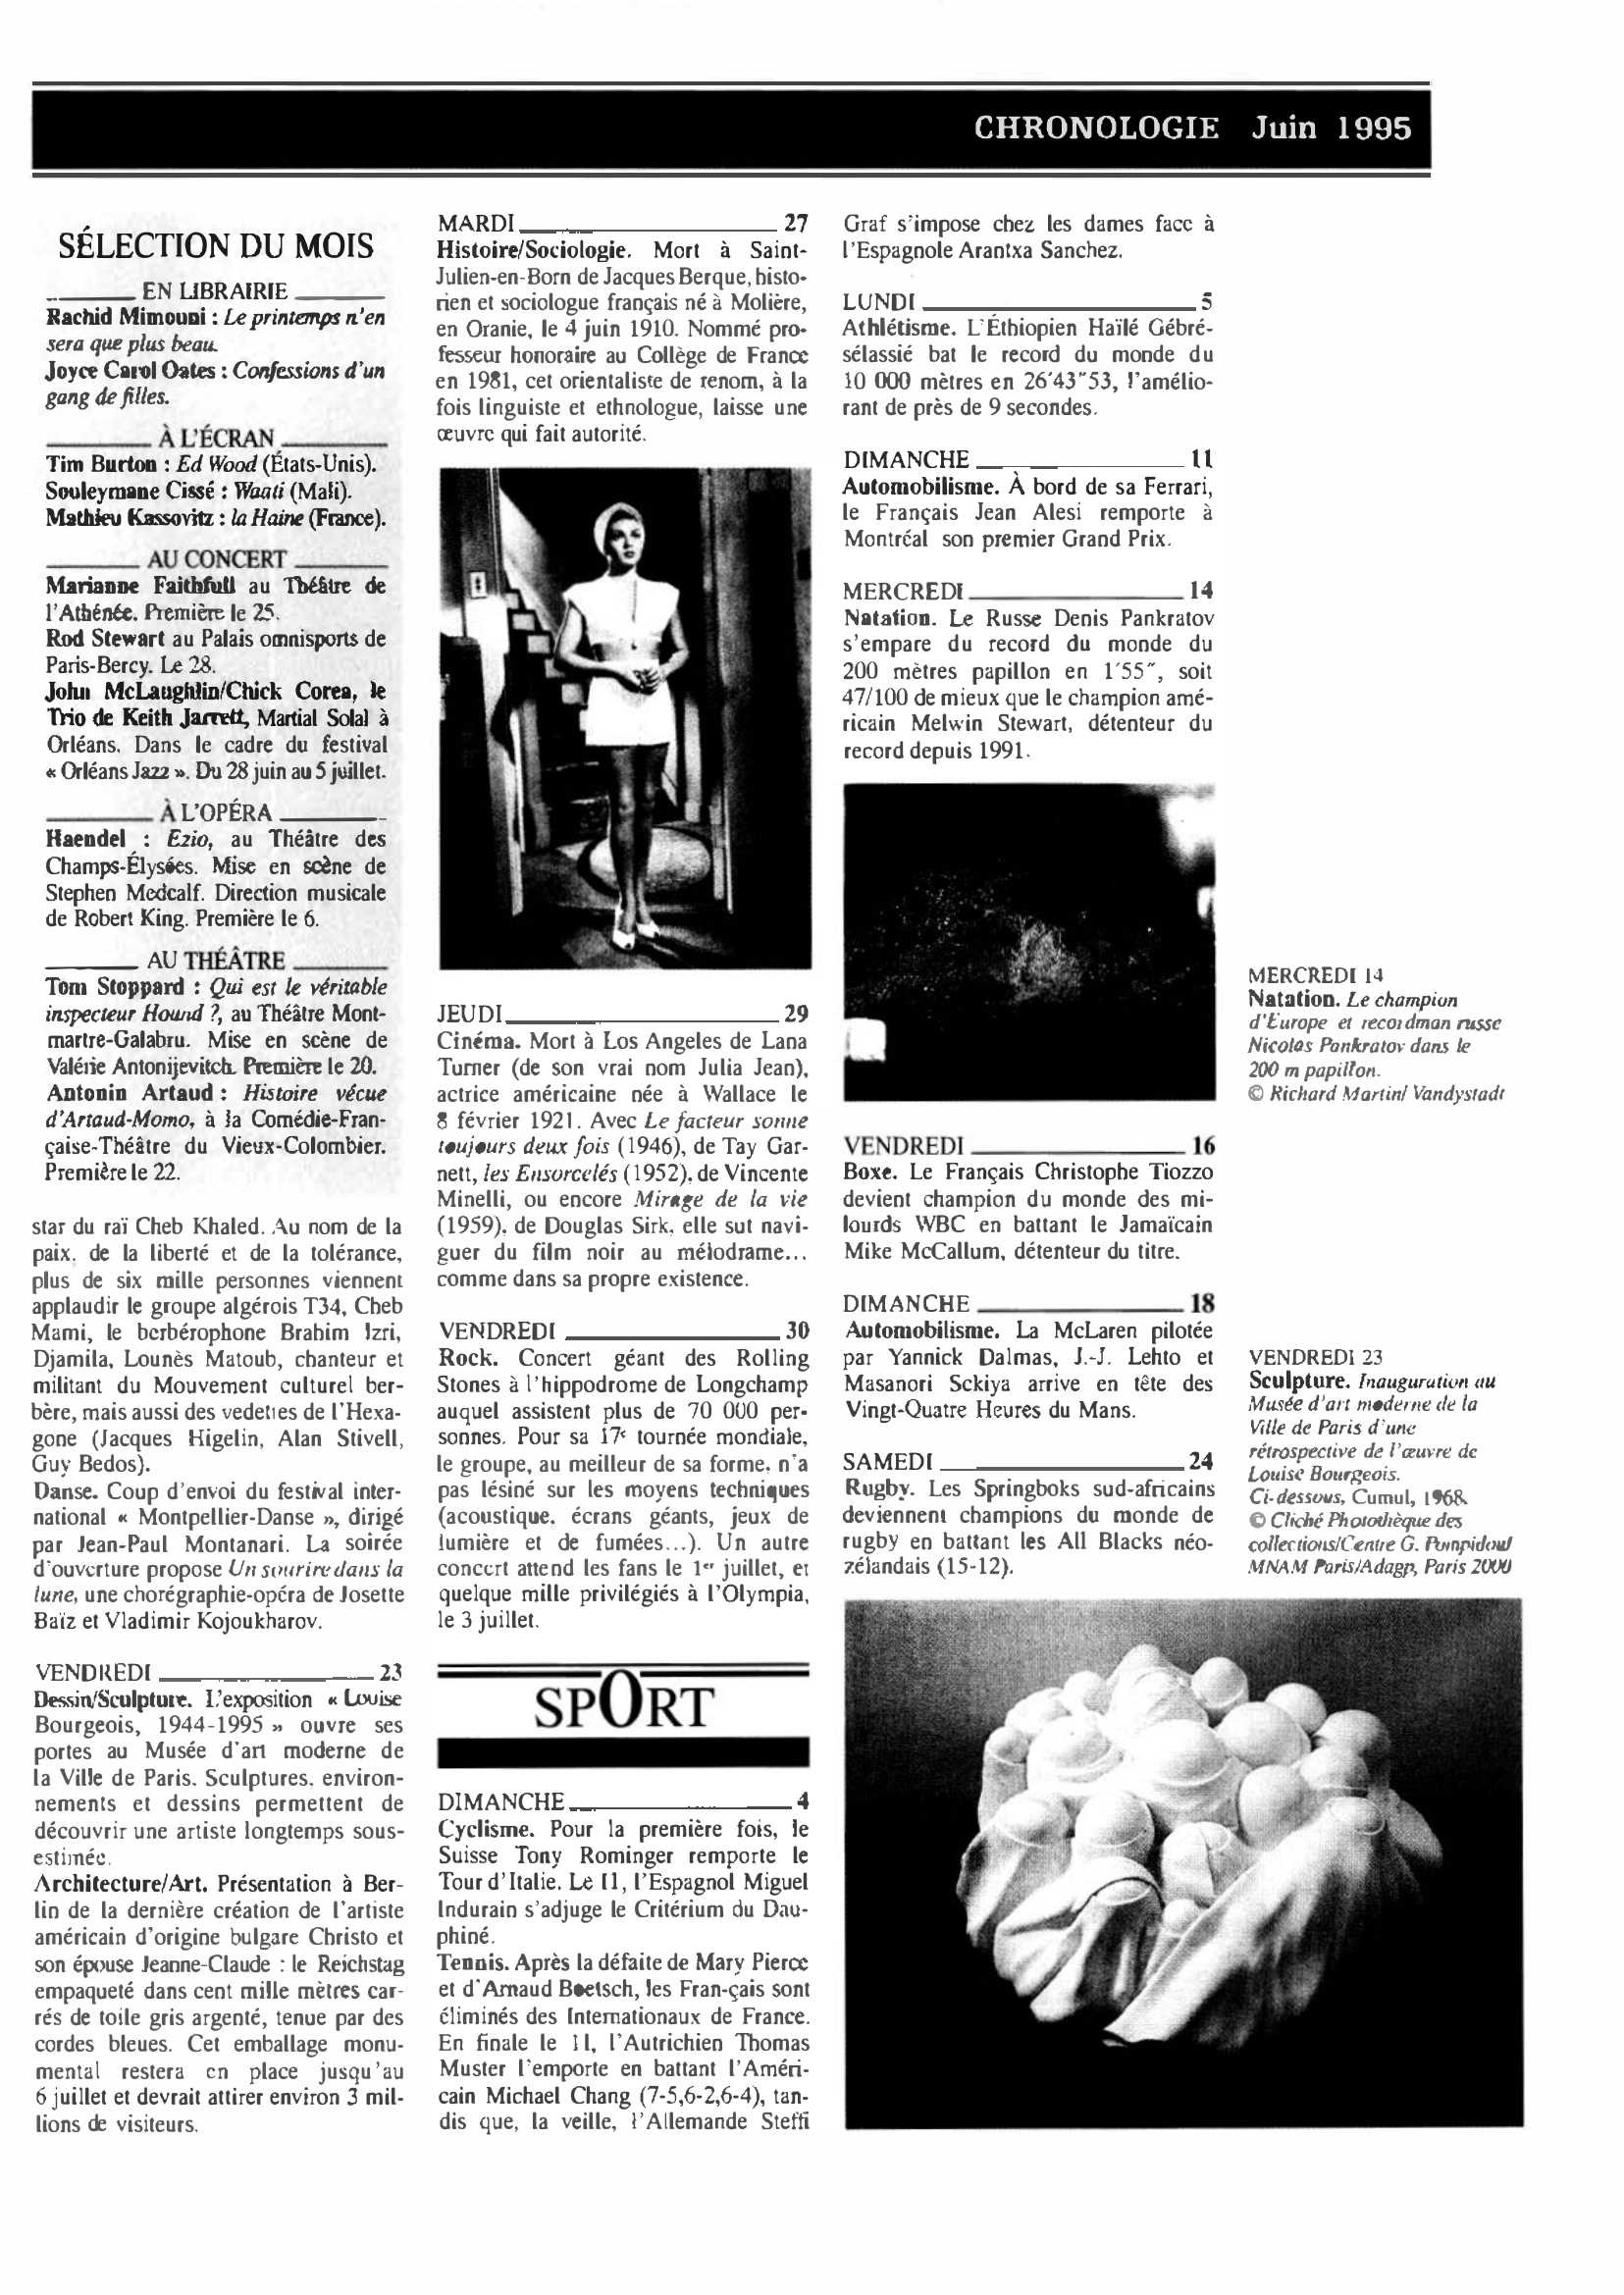 Prévisualisation du document CHRONOLOGIE Juin 1995 dans le monde (histoire chronologique)